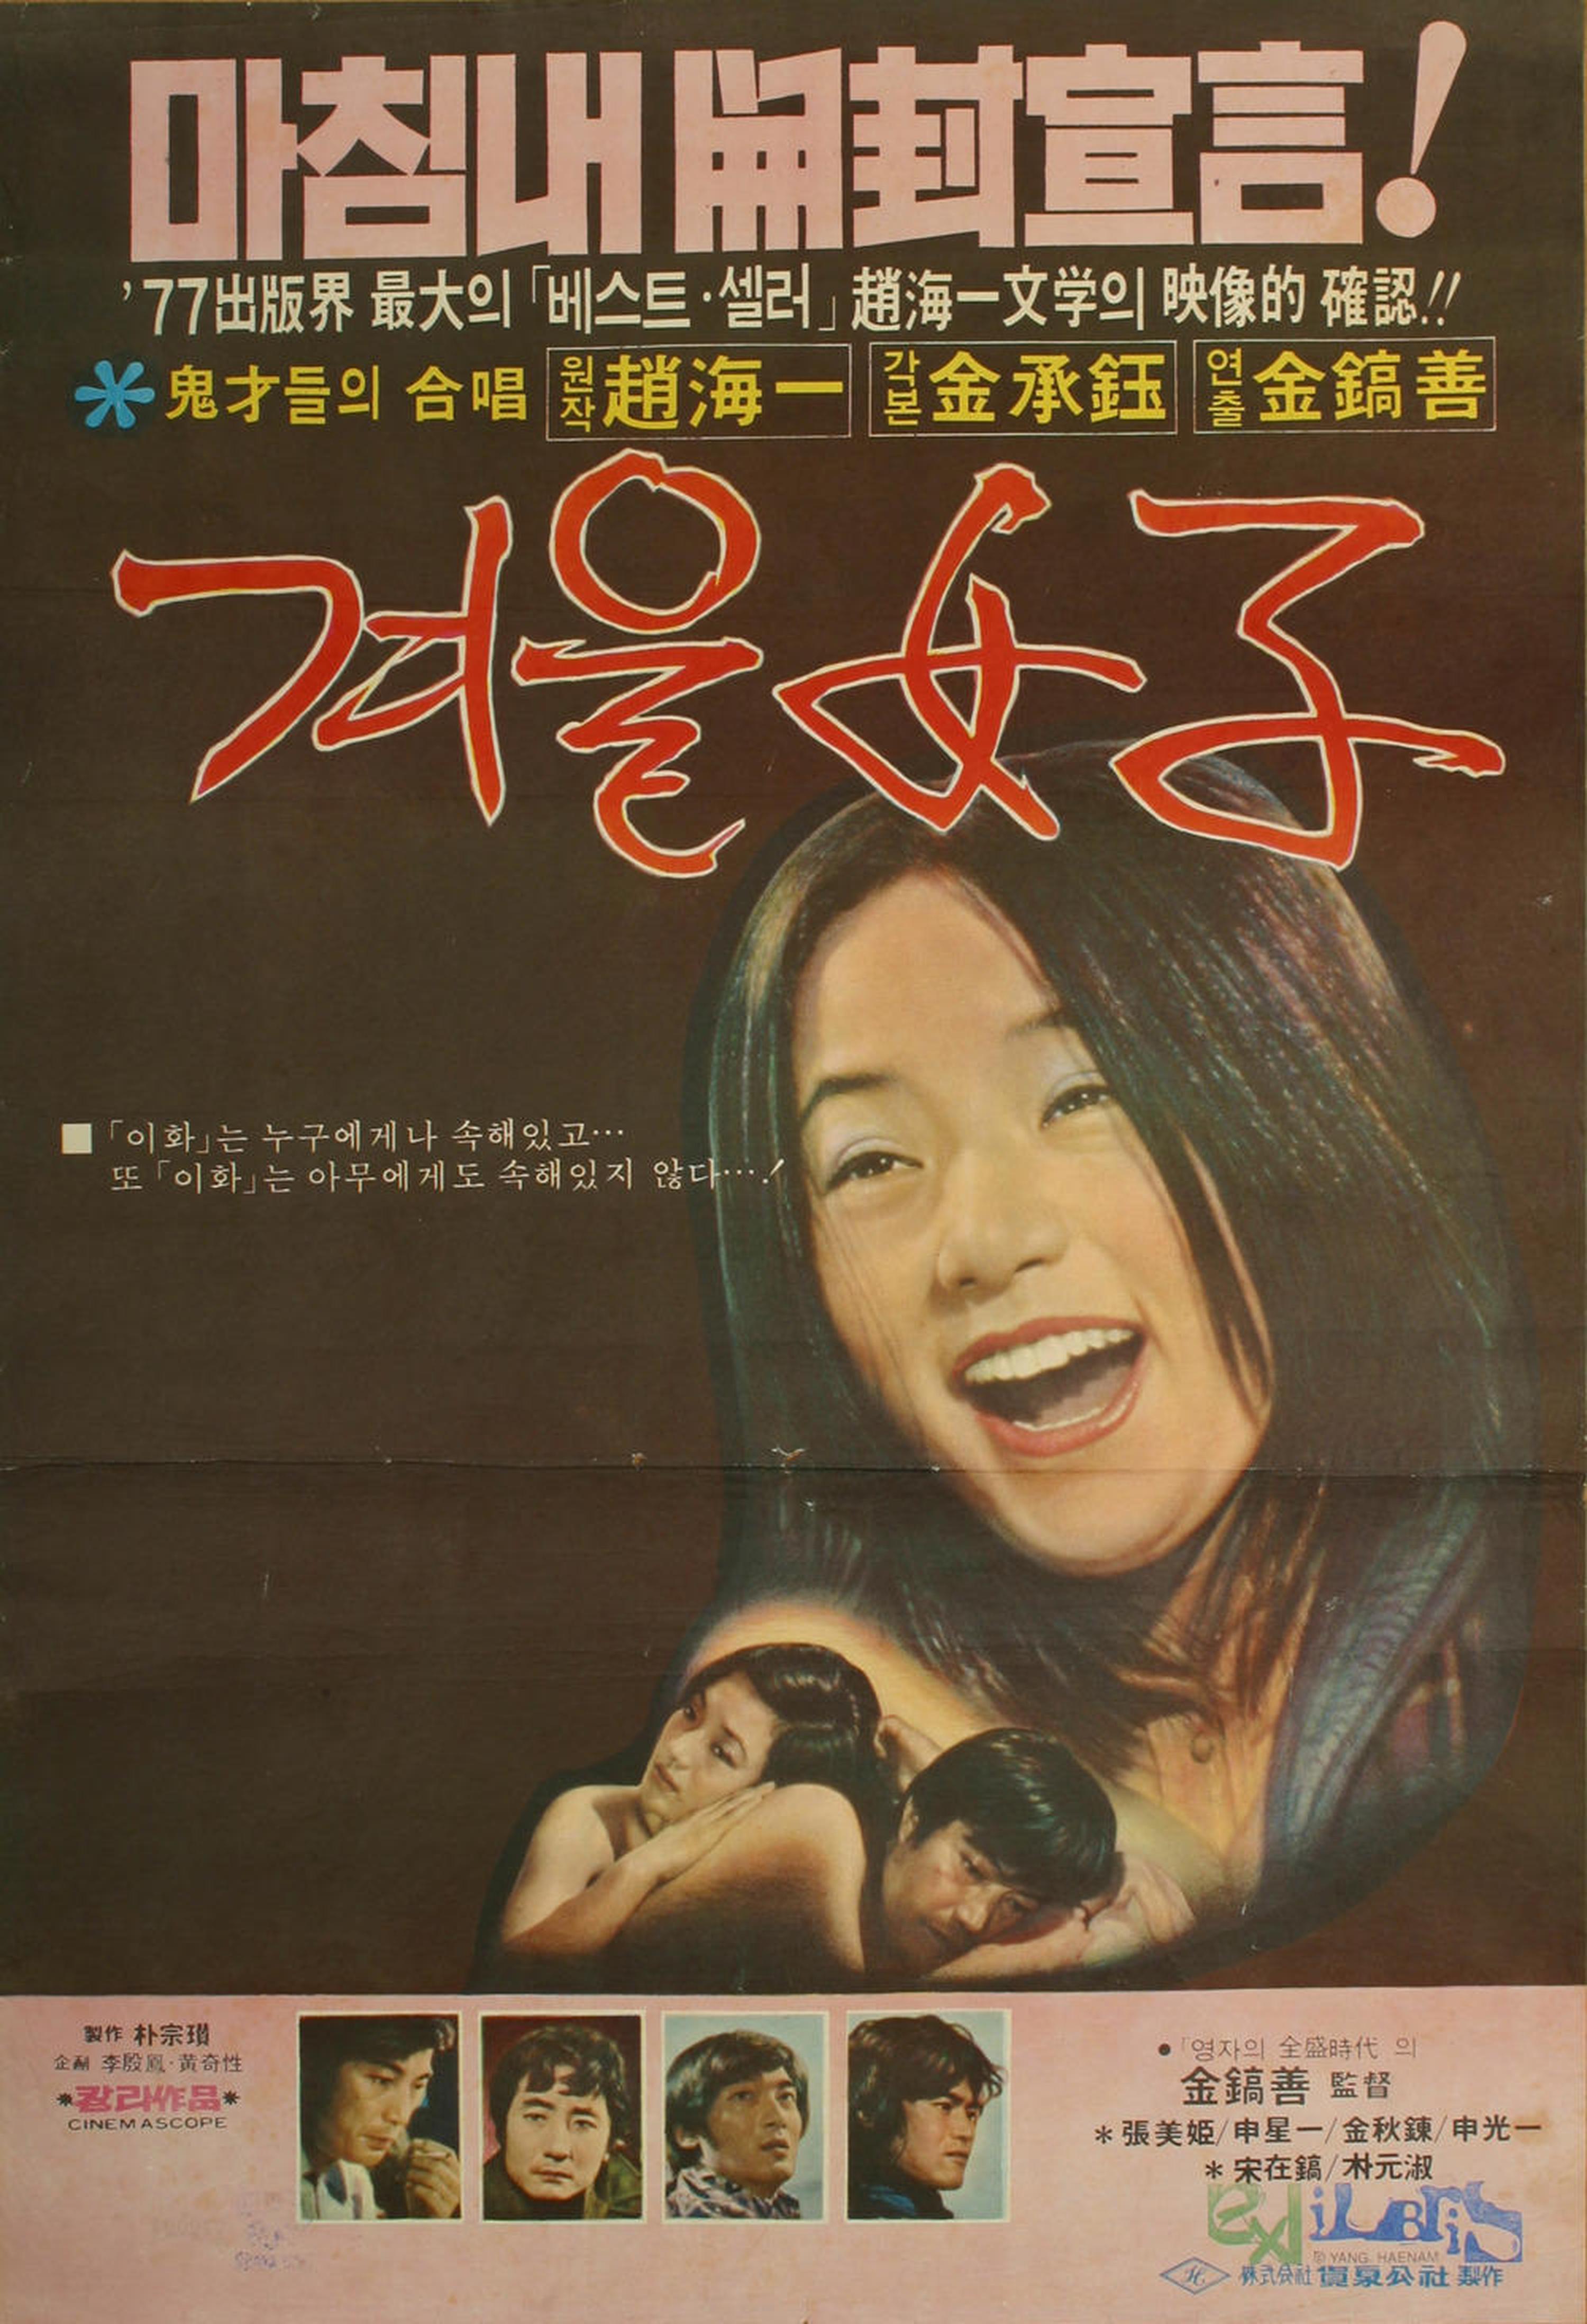 【1970-1980】《冬天的女子》 (1977)导演金镐善。本片是对现代女性的性伦理观念是一个极大的挑战，公映后引起热评。保守人士认为这是一部令人瞠目结舌的淫乱作品，但是该片在青年观众群里却受到追捧，甚至创下惊人的票房纪录。